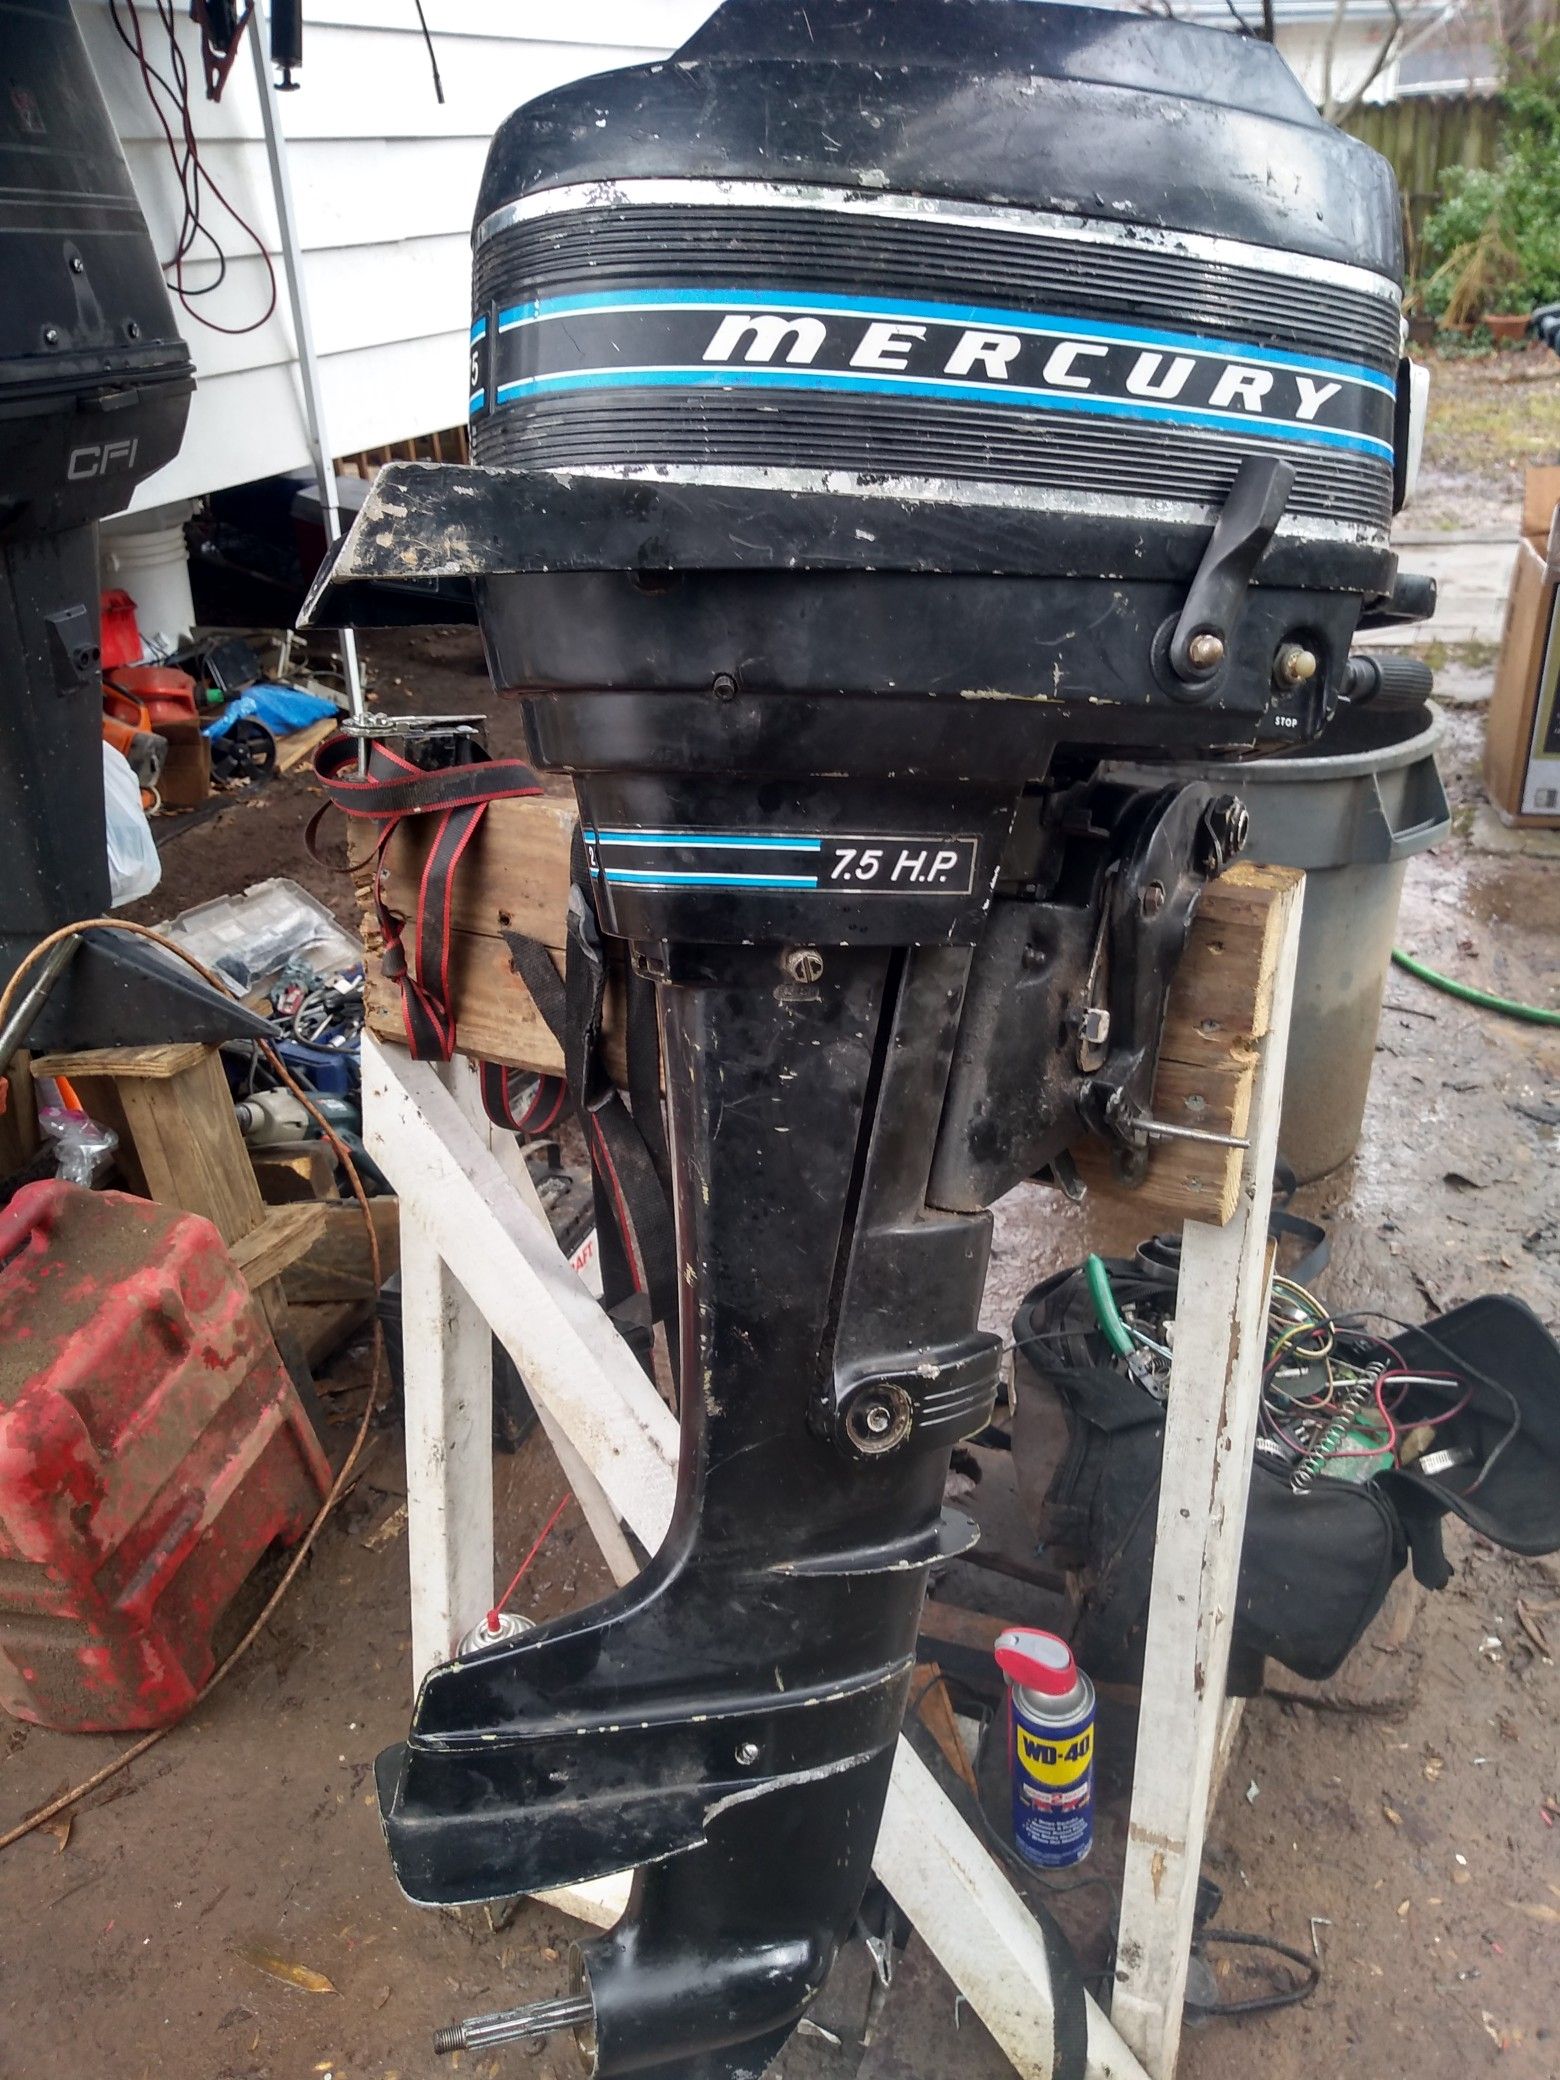 Mercury 7.5hp outboard motor